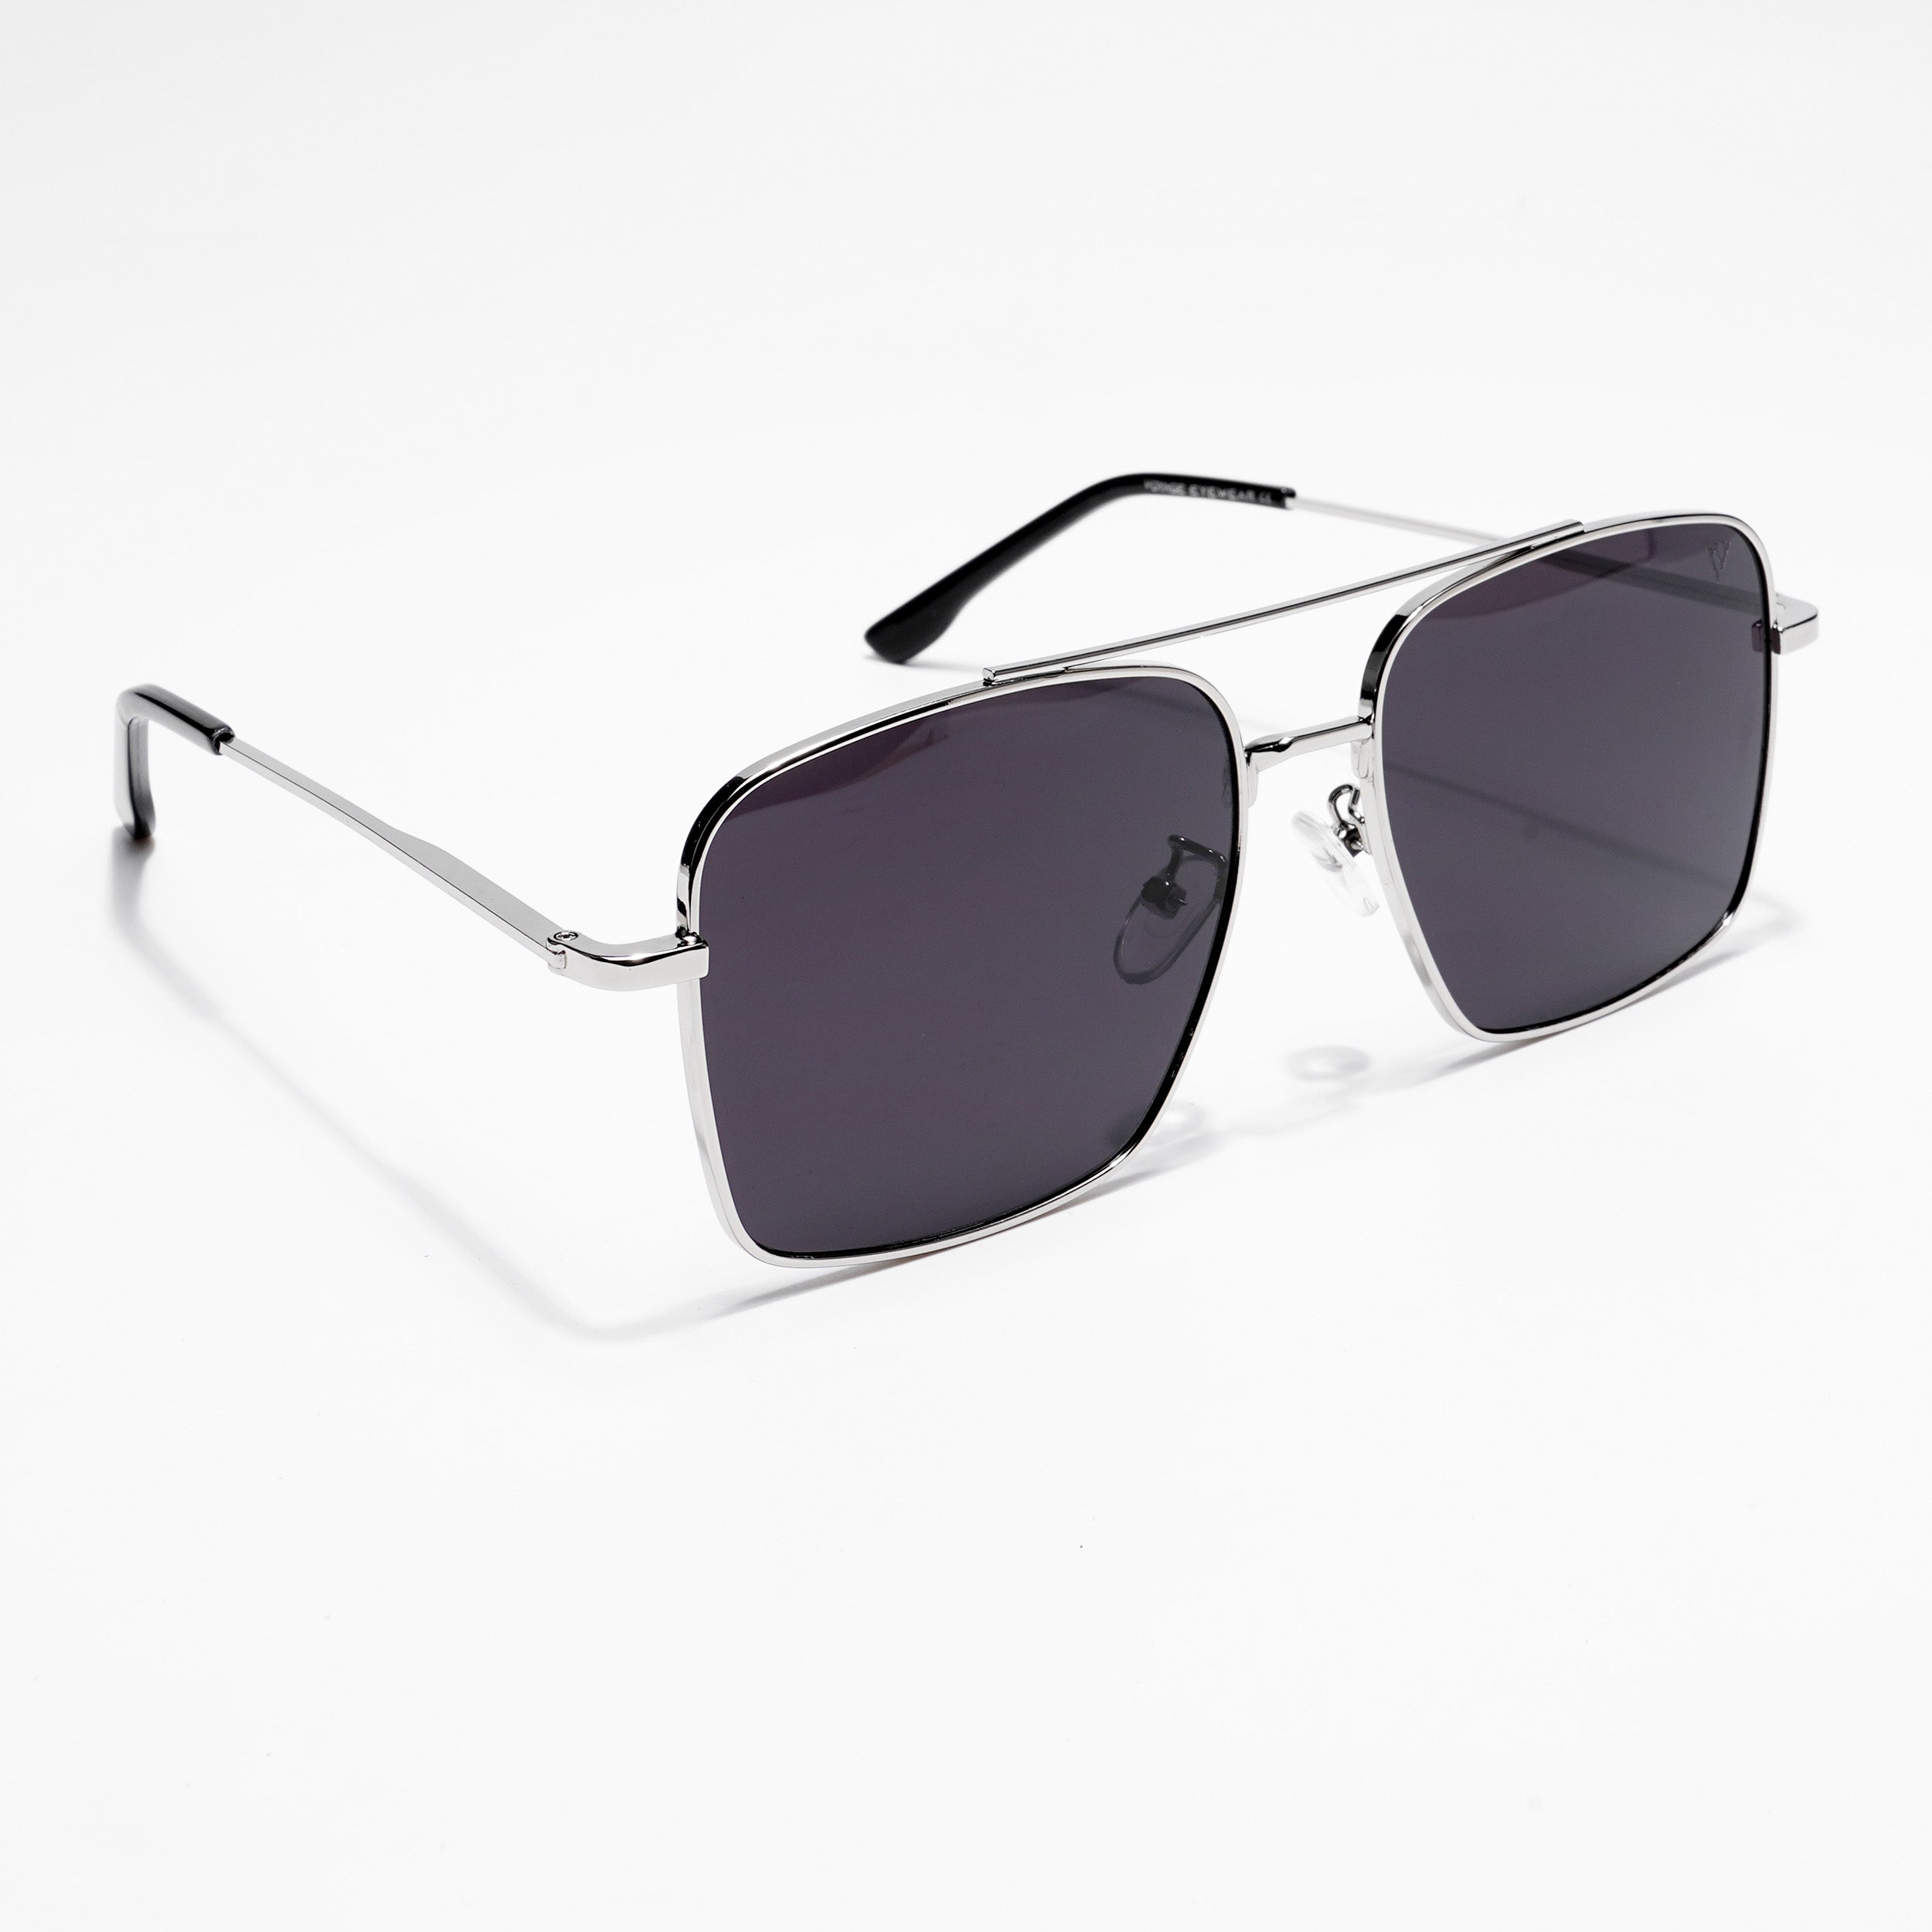 Voyage Aviator Sunglasses for Men & Women (Black Lens | Silver Frame - MG5179)